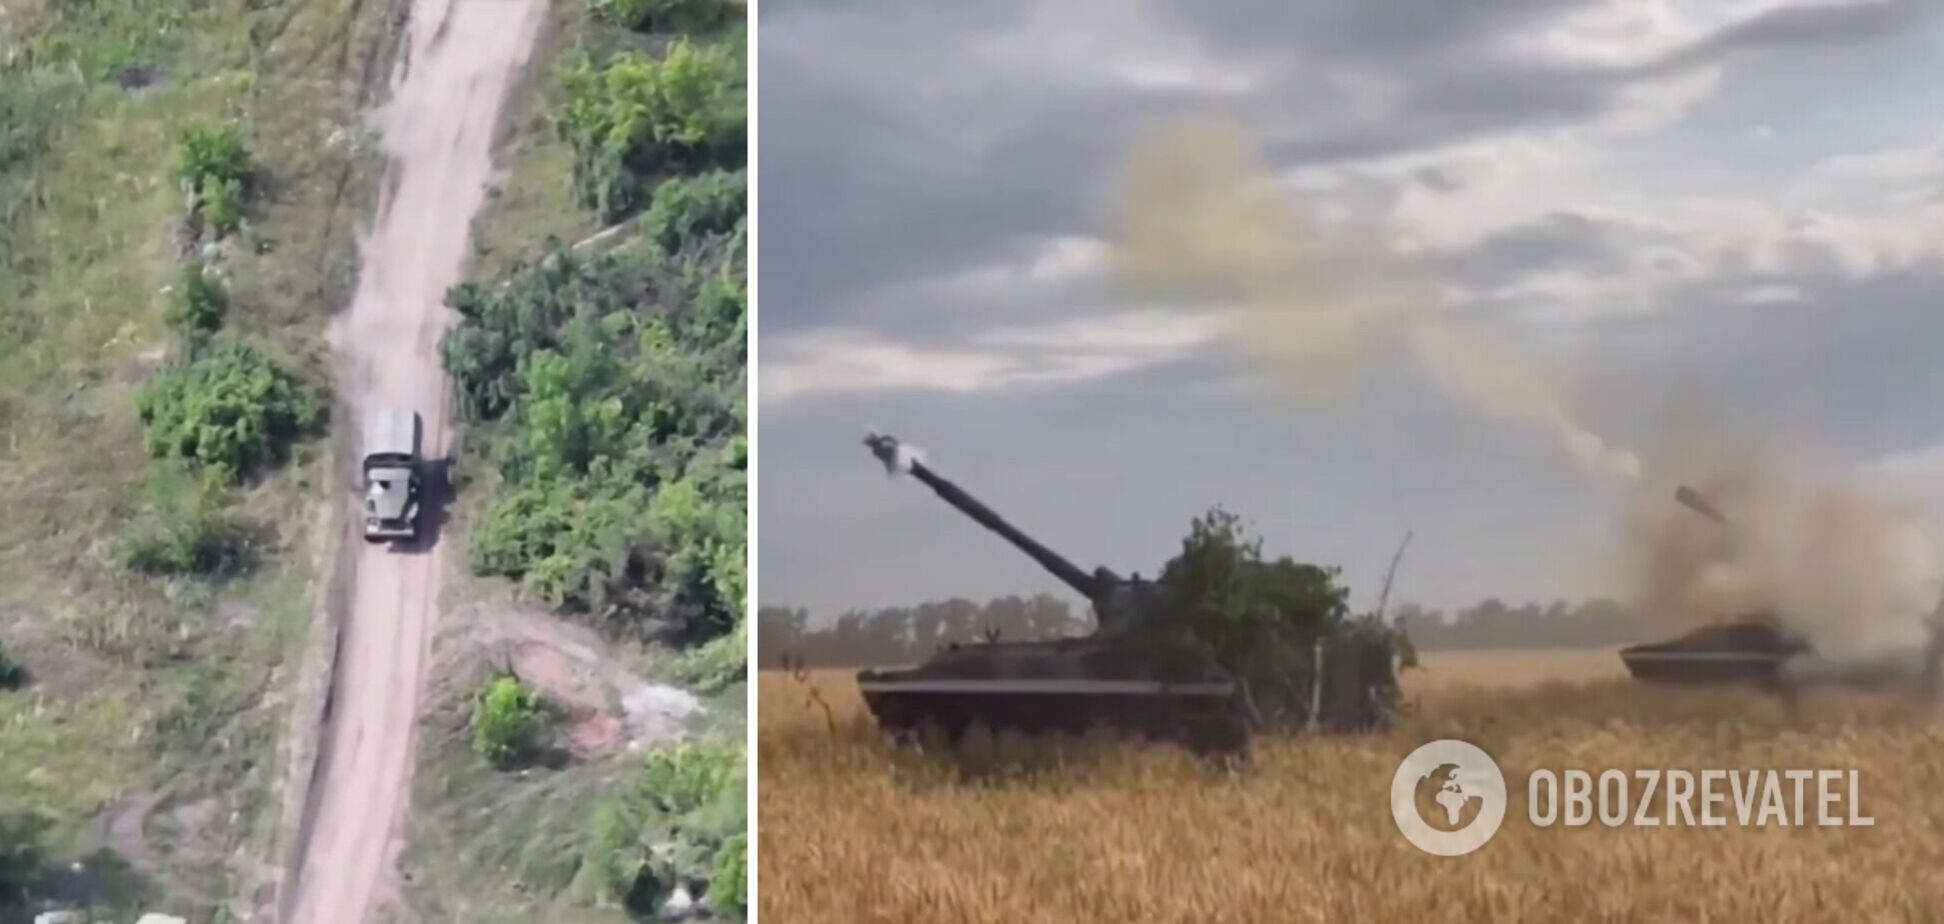 Защитники Украины в тылу врага вплотную к границе РФ уничтожили семь грузовиков с БК и два автомобиля охраны. Видео спецоперации